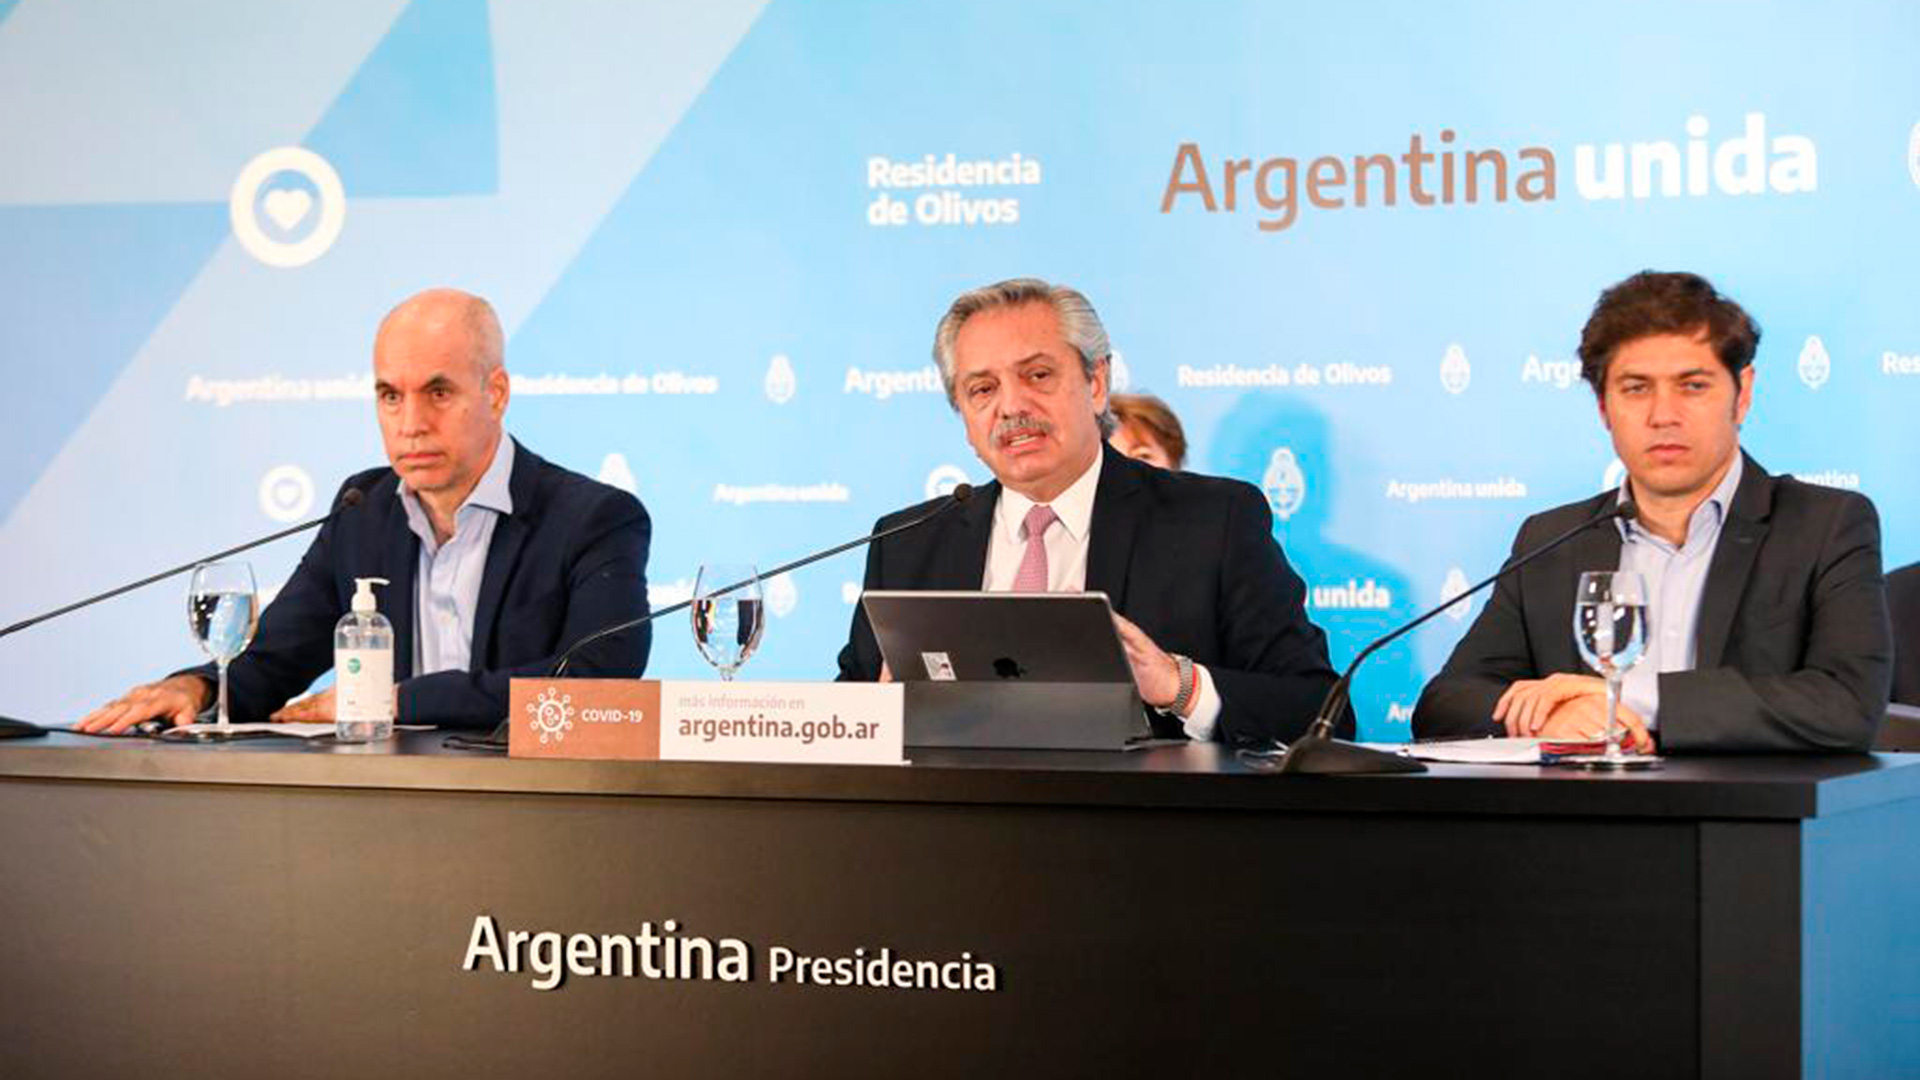 El Presidente se mostró acompañado por Horacio Rodríguez Larreta y Axel Kicillof